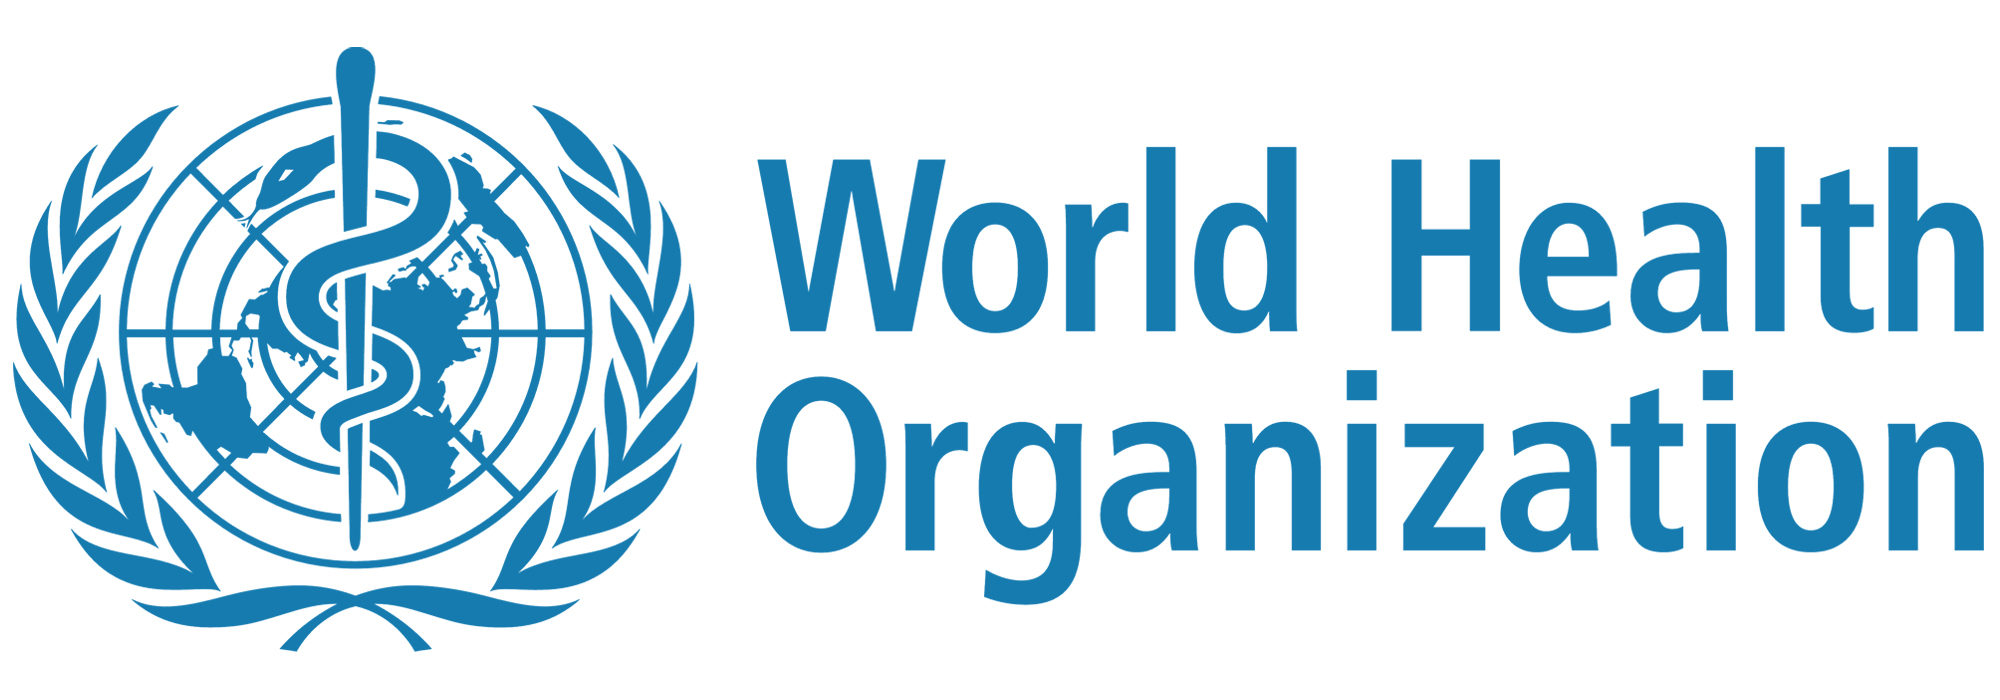 Weltgesundheitsorganisation | World Health Organization | WHO 